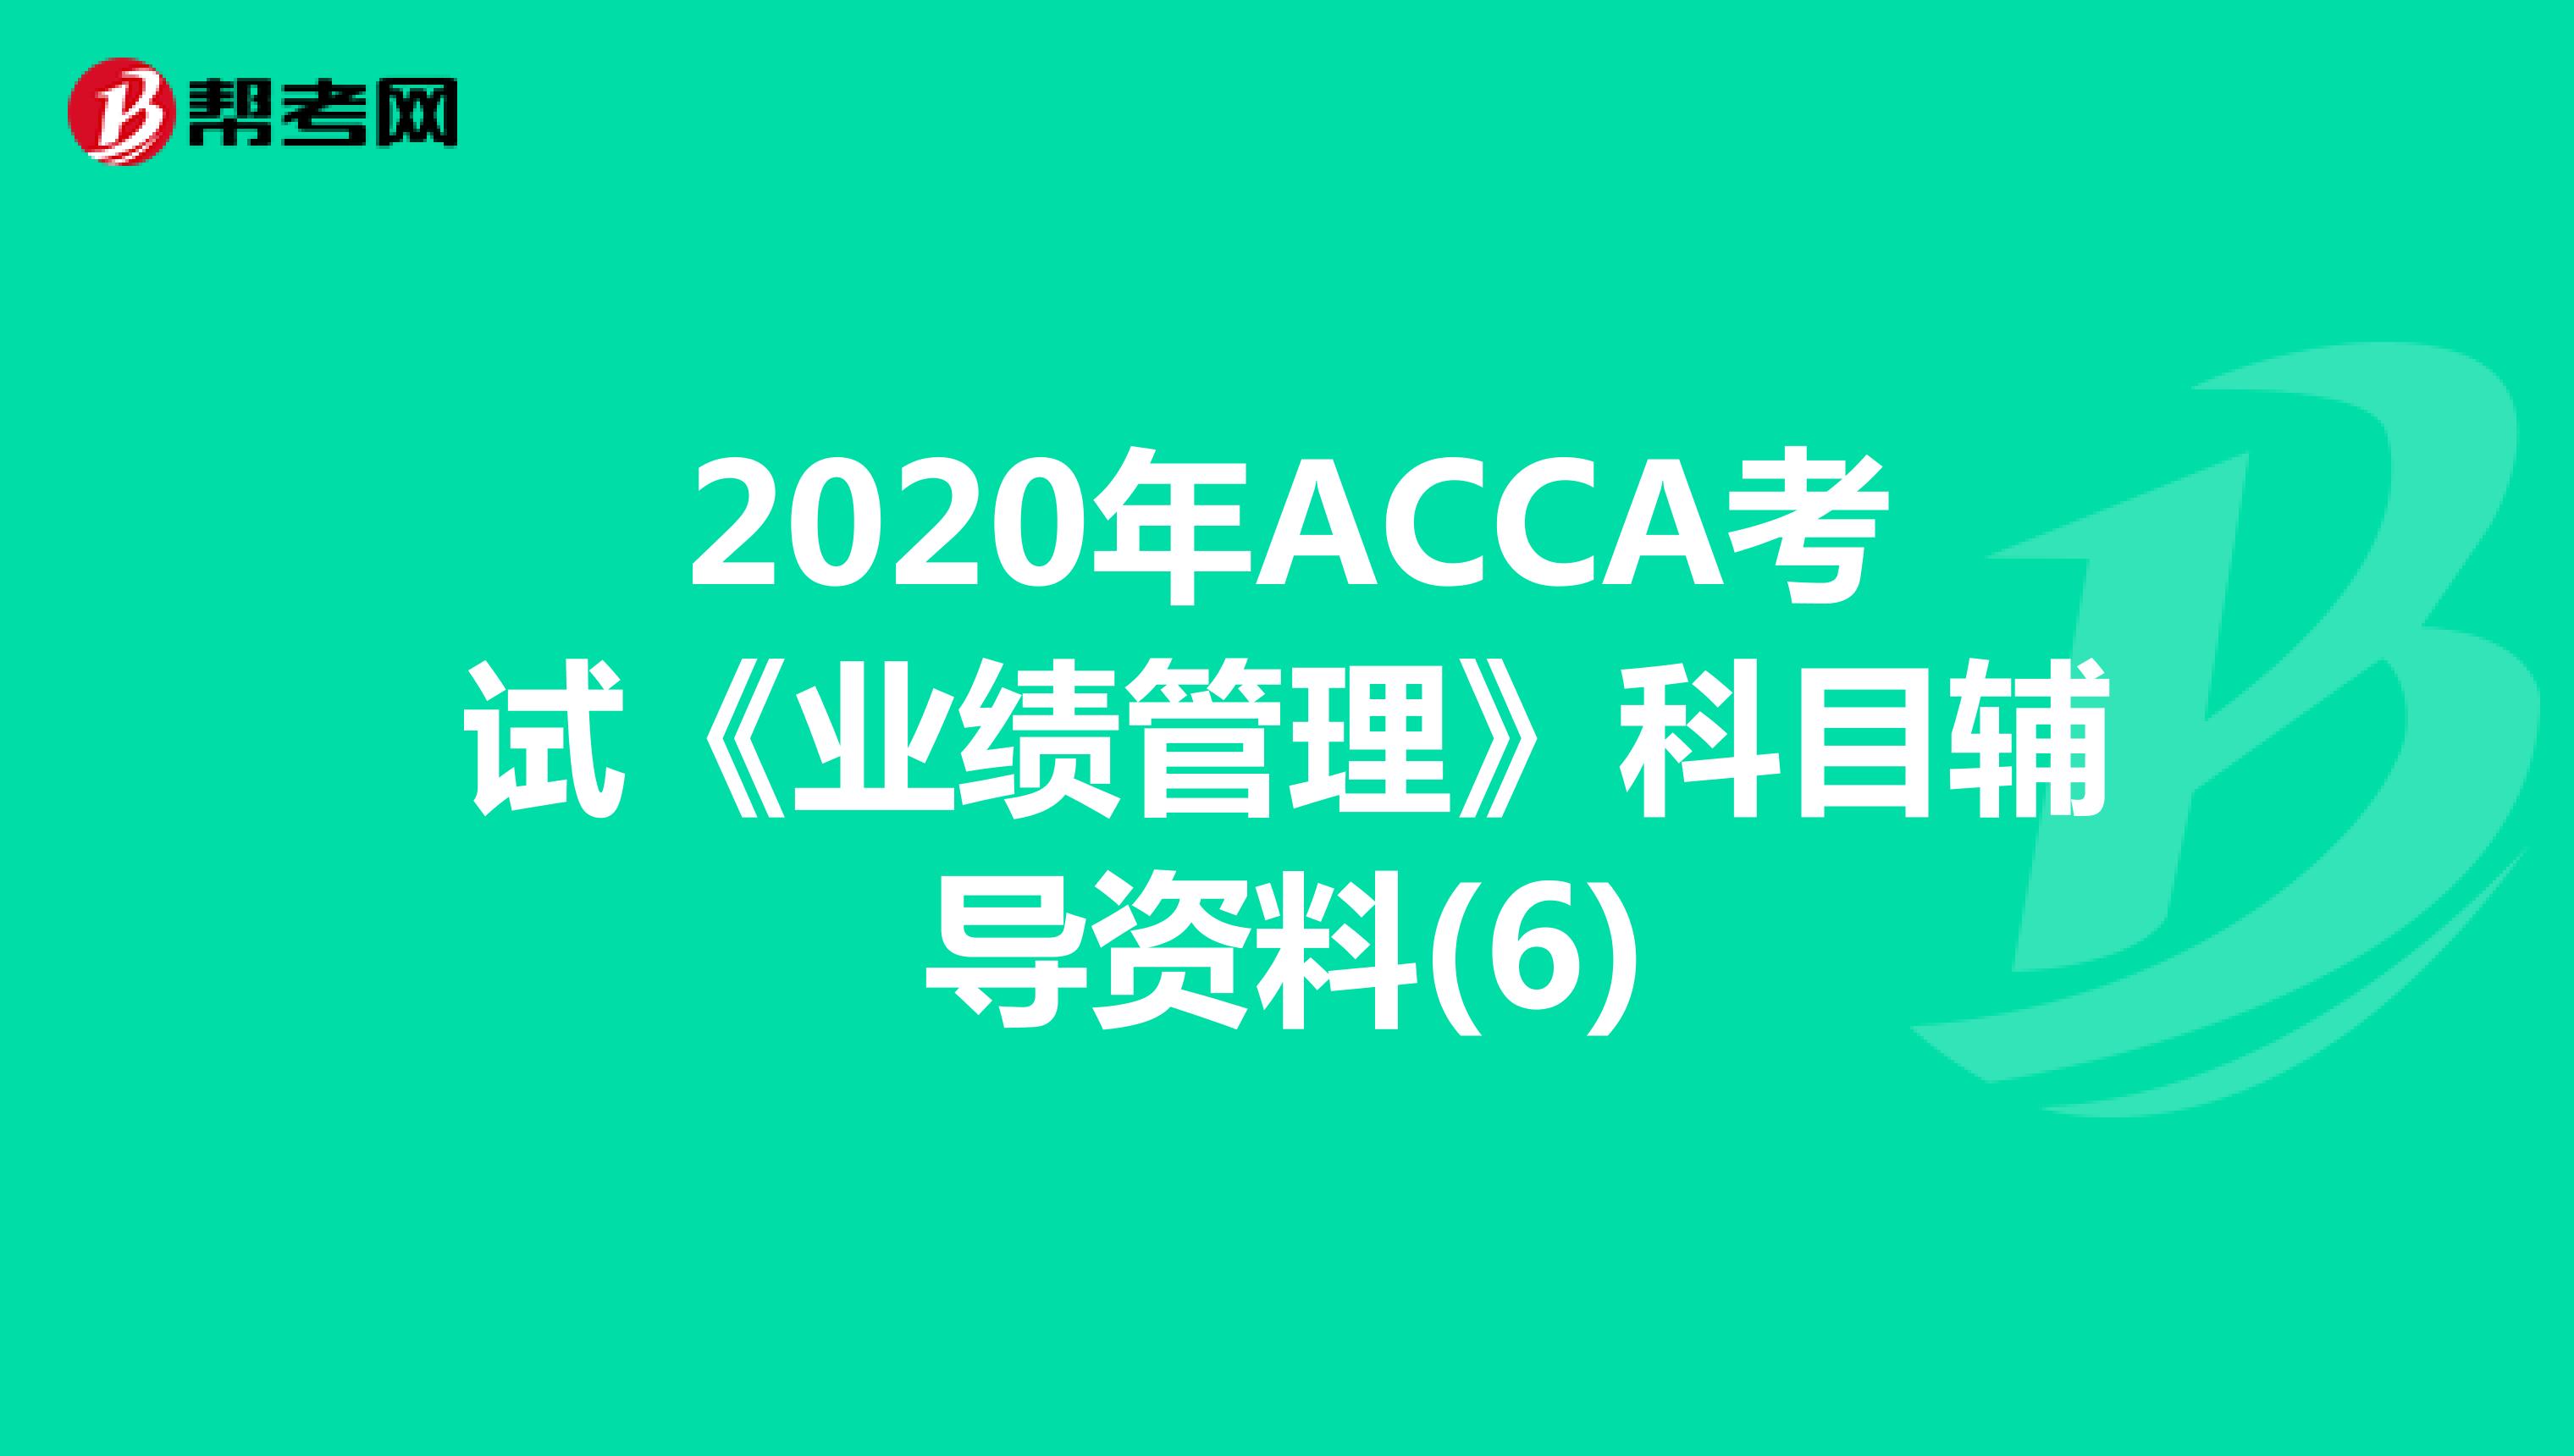 2020年ACCA考试《业绩管理》科目辅导资料(6)